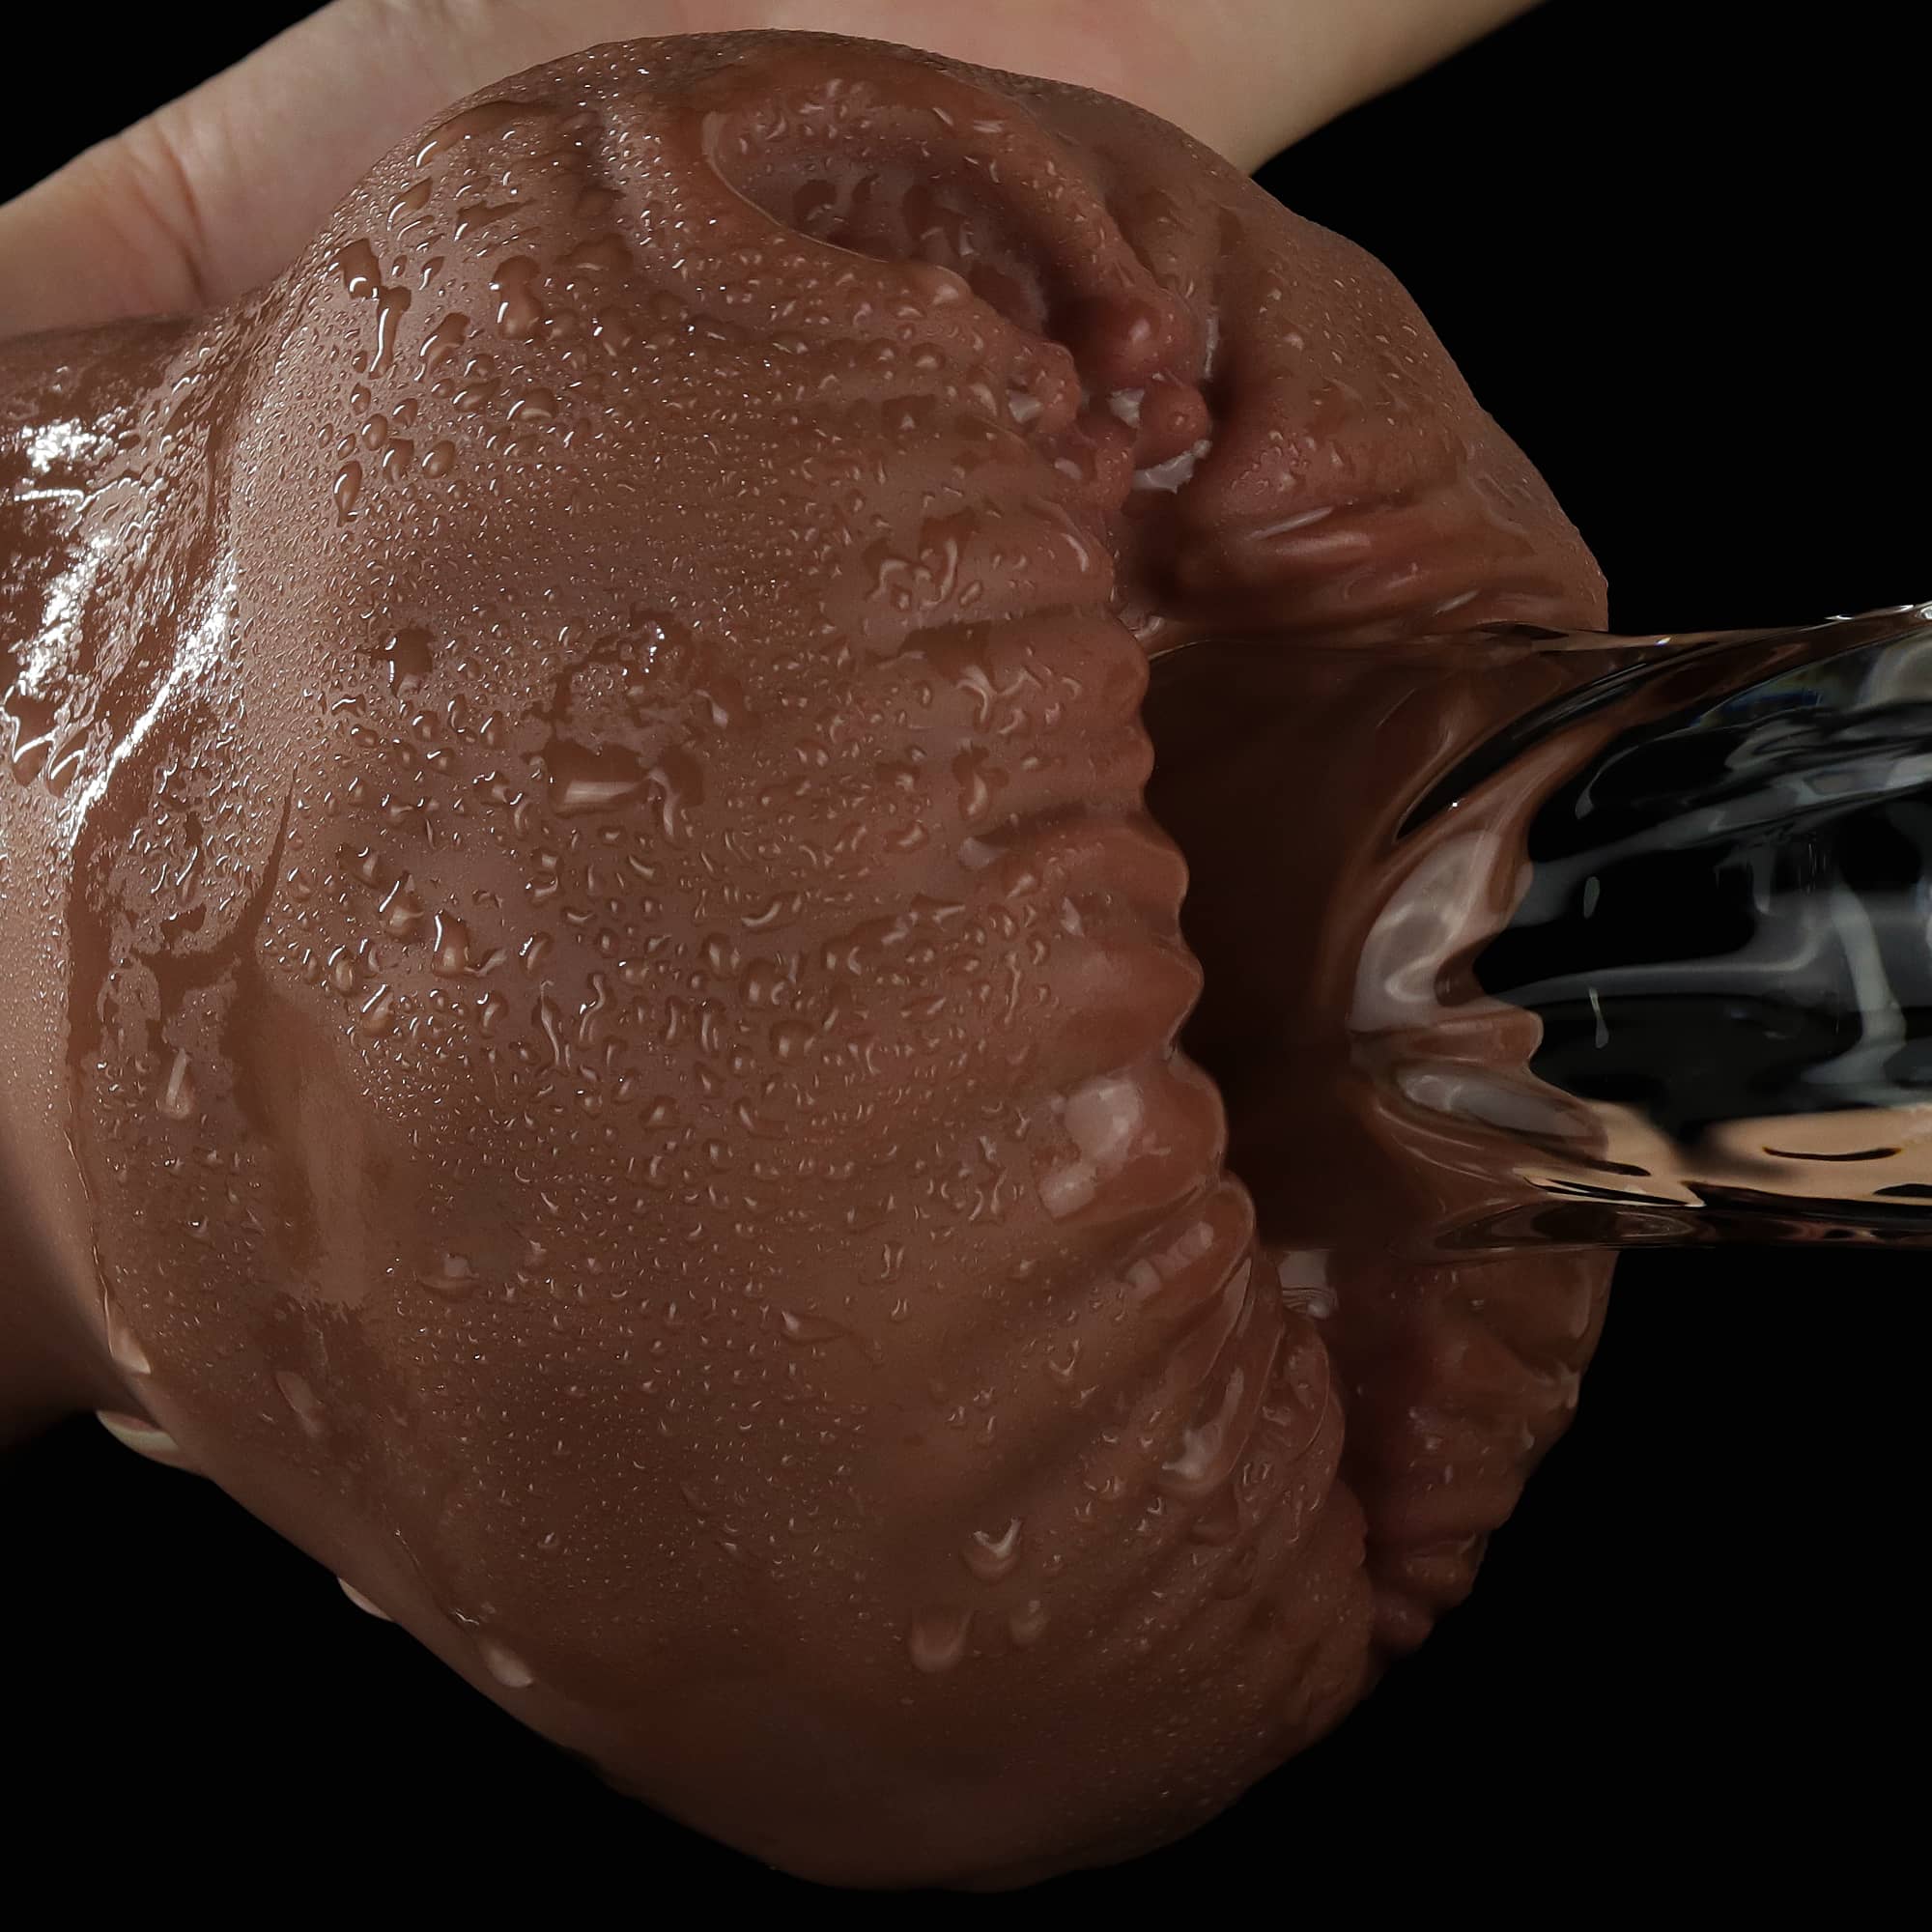 A dildo inserted into the aliens pie male masturbator